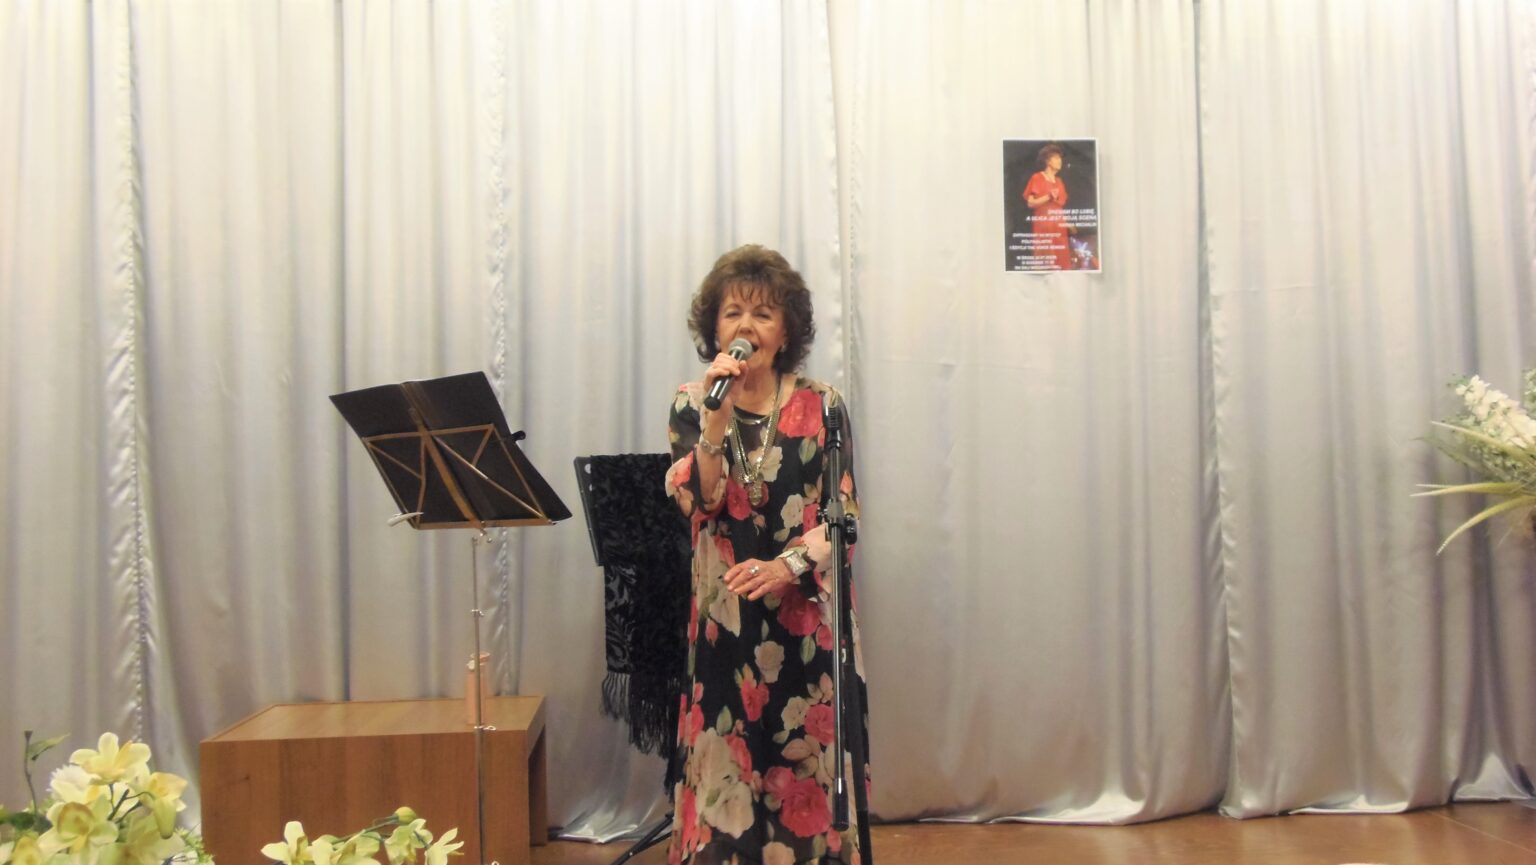 Pani Hanna Michalik podczas występu na scenie sali widowiskowej Centrum Alzheimera. Kobieta ubrana w długą suknie w kwiaty trzyma mikrofon i śpiewa.